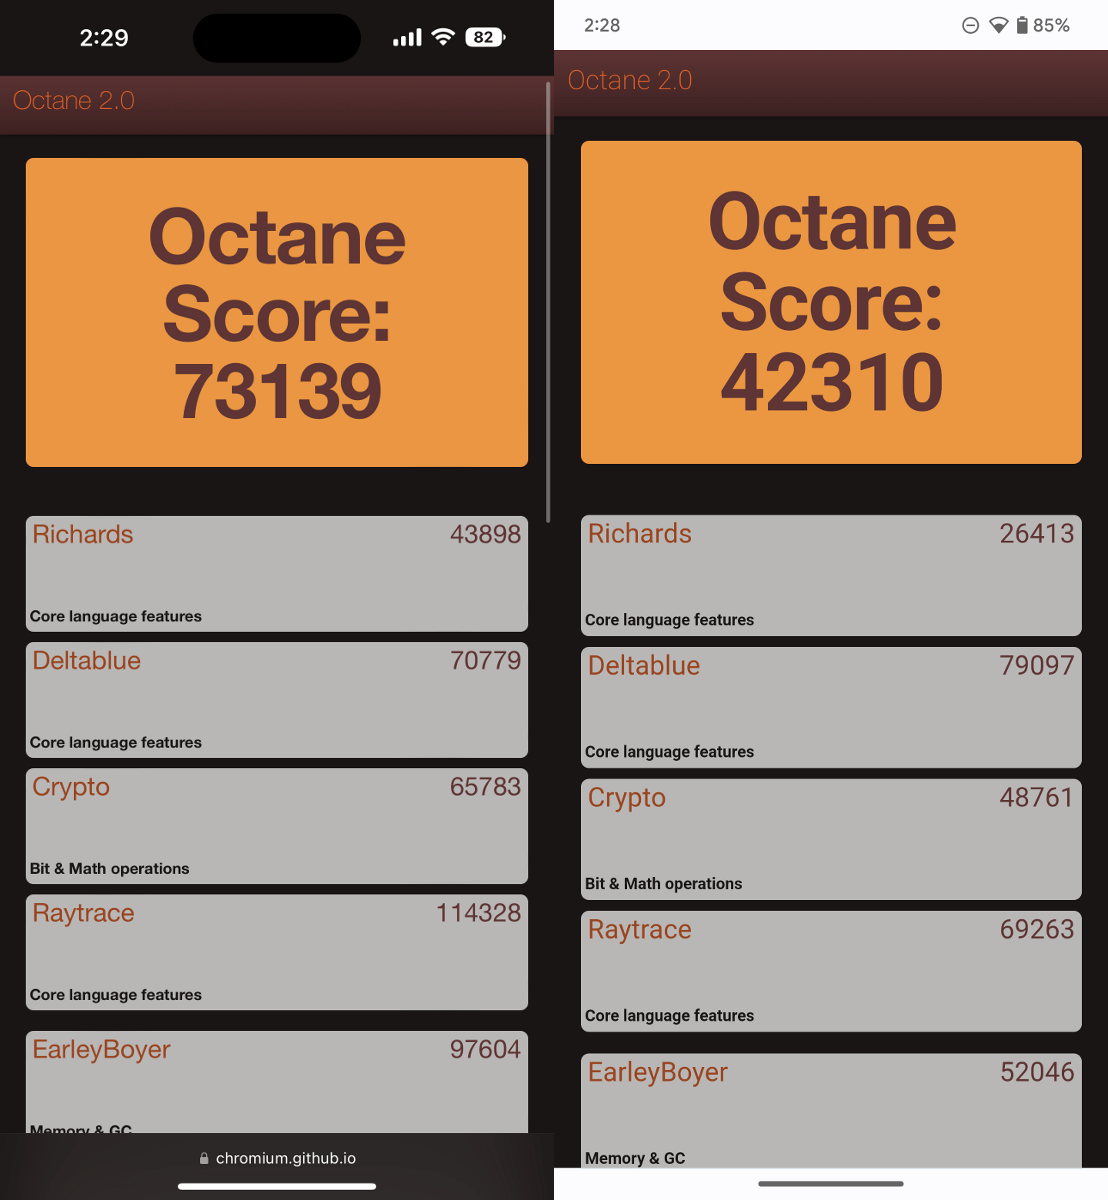 Googleのベンチマークアプリ「Octane 2.0」での性能比較。左がiPhone 14 Pro Max、右がPixel 7 Pro。これに限らず、iOSとAndroidに両対応しているベンチマークアプリでは、iPhone 14 Pro MaxのほうがPixel 7 Proを上回るスコアが出ることが多いようです